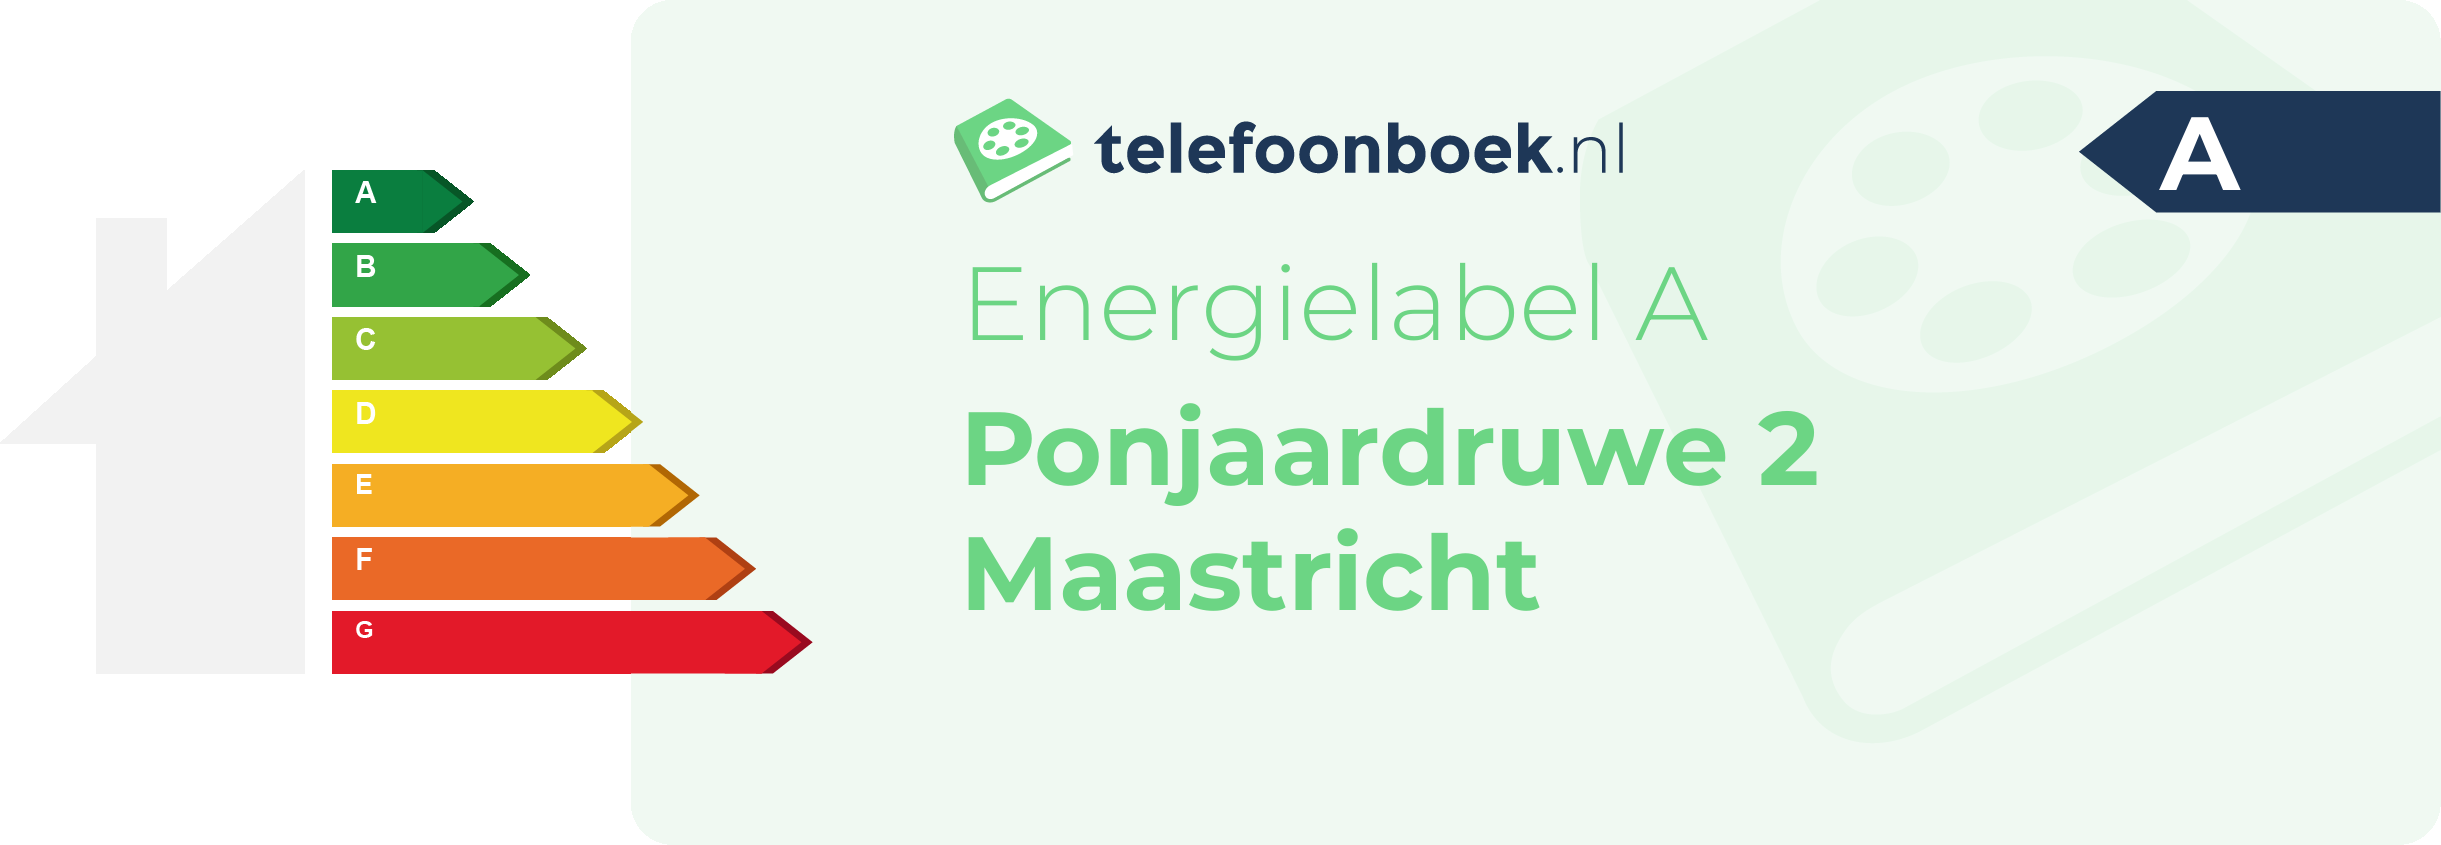 Energielabel Ponjaardruwe 2 Maastricht